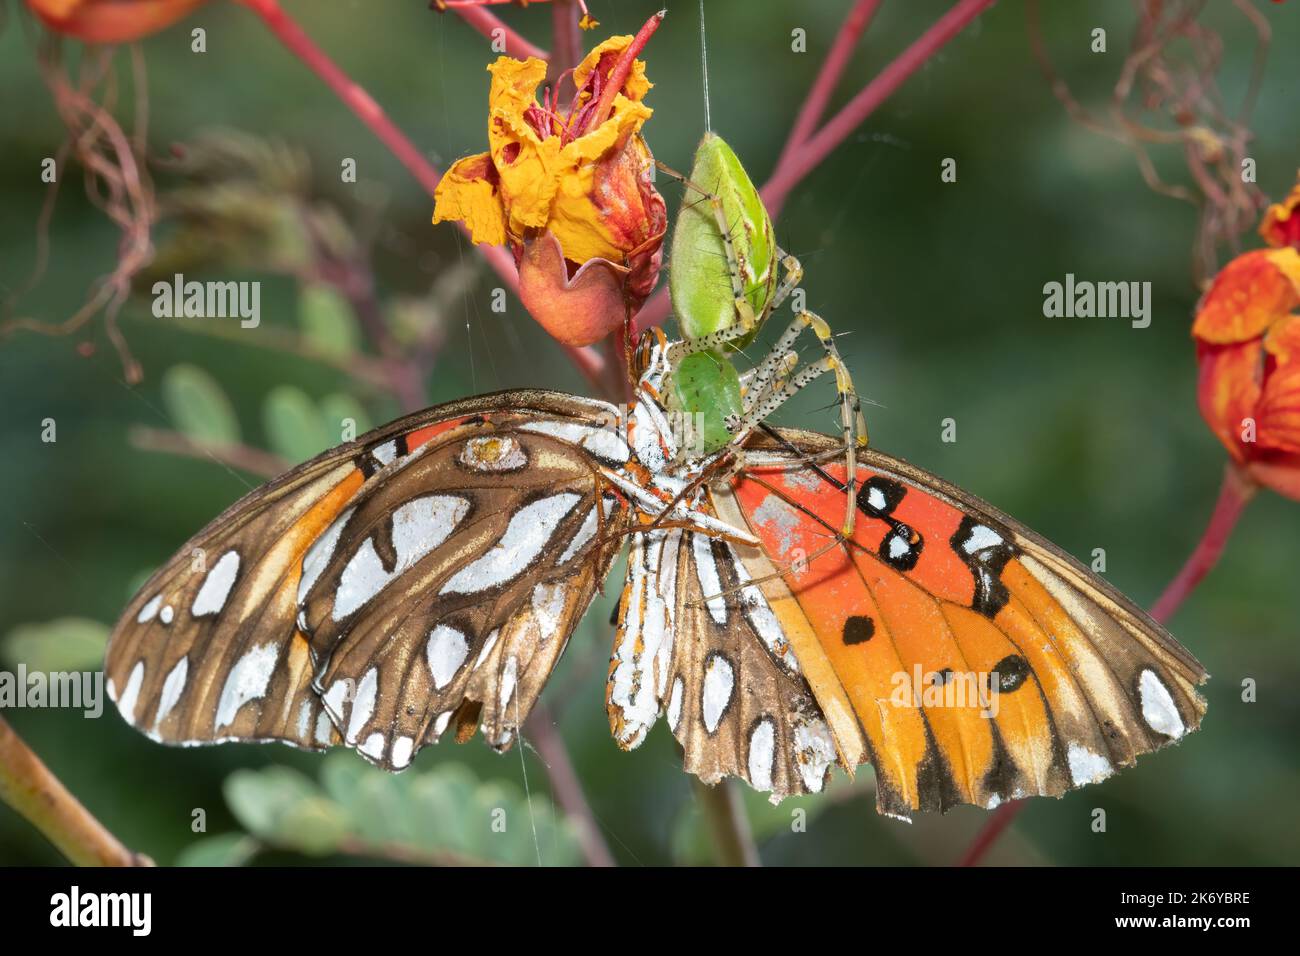 Eine grüne Luchs-Spinne macht aus einem fritillären Schmetterling am Mitchell Lake, San Antonio, Texas, eine Mahlzeit auf einem roten Paradiesvogelpflanze. Stockfoto